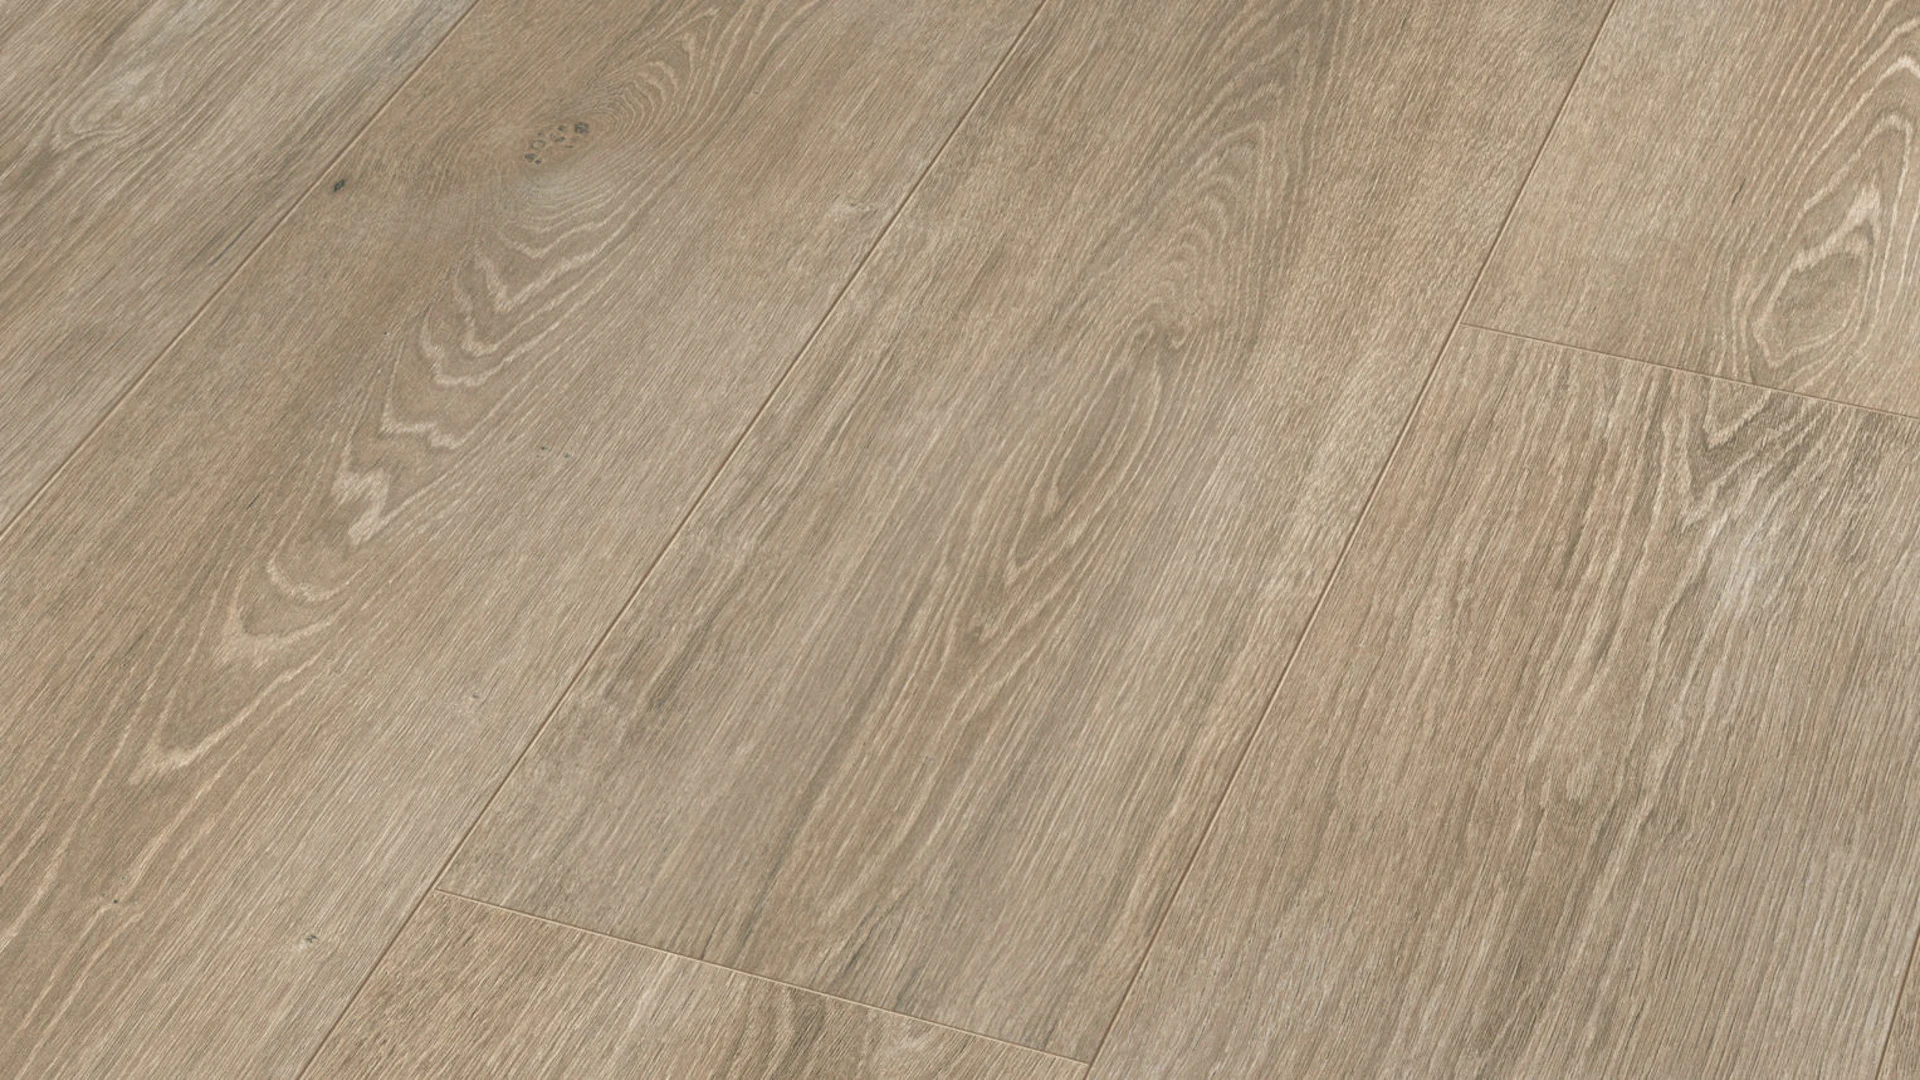 MEISTER Laminate flooring - MeisterDesign LL 250 Oak white-grey 6277